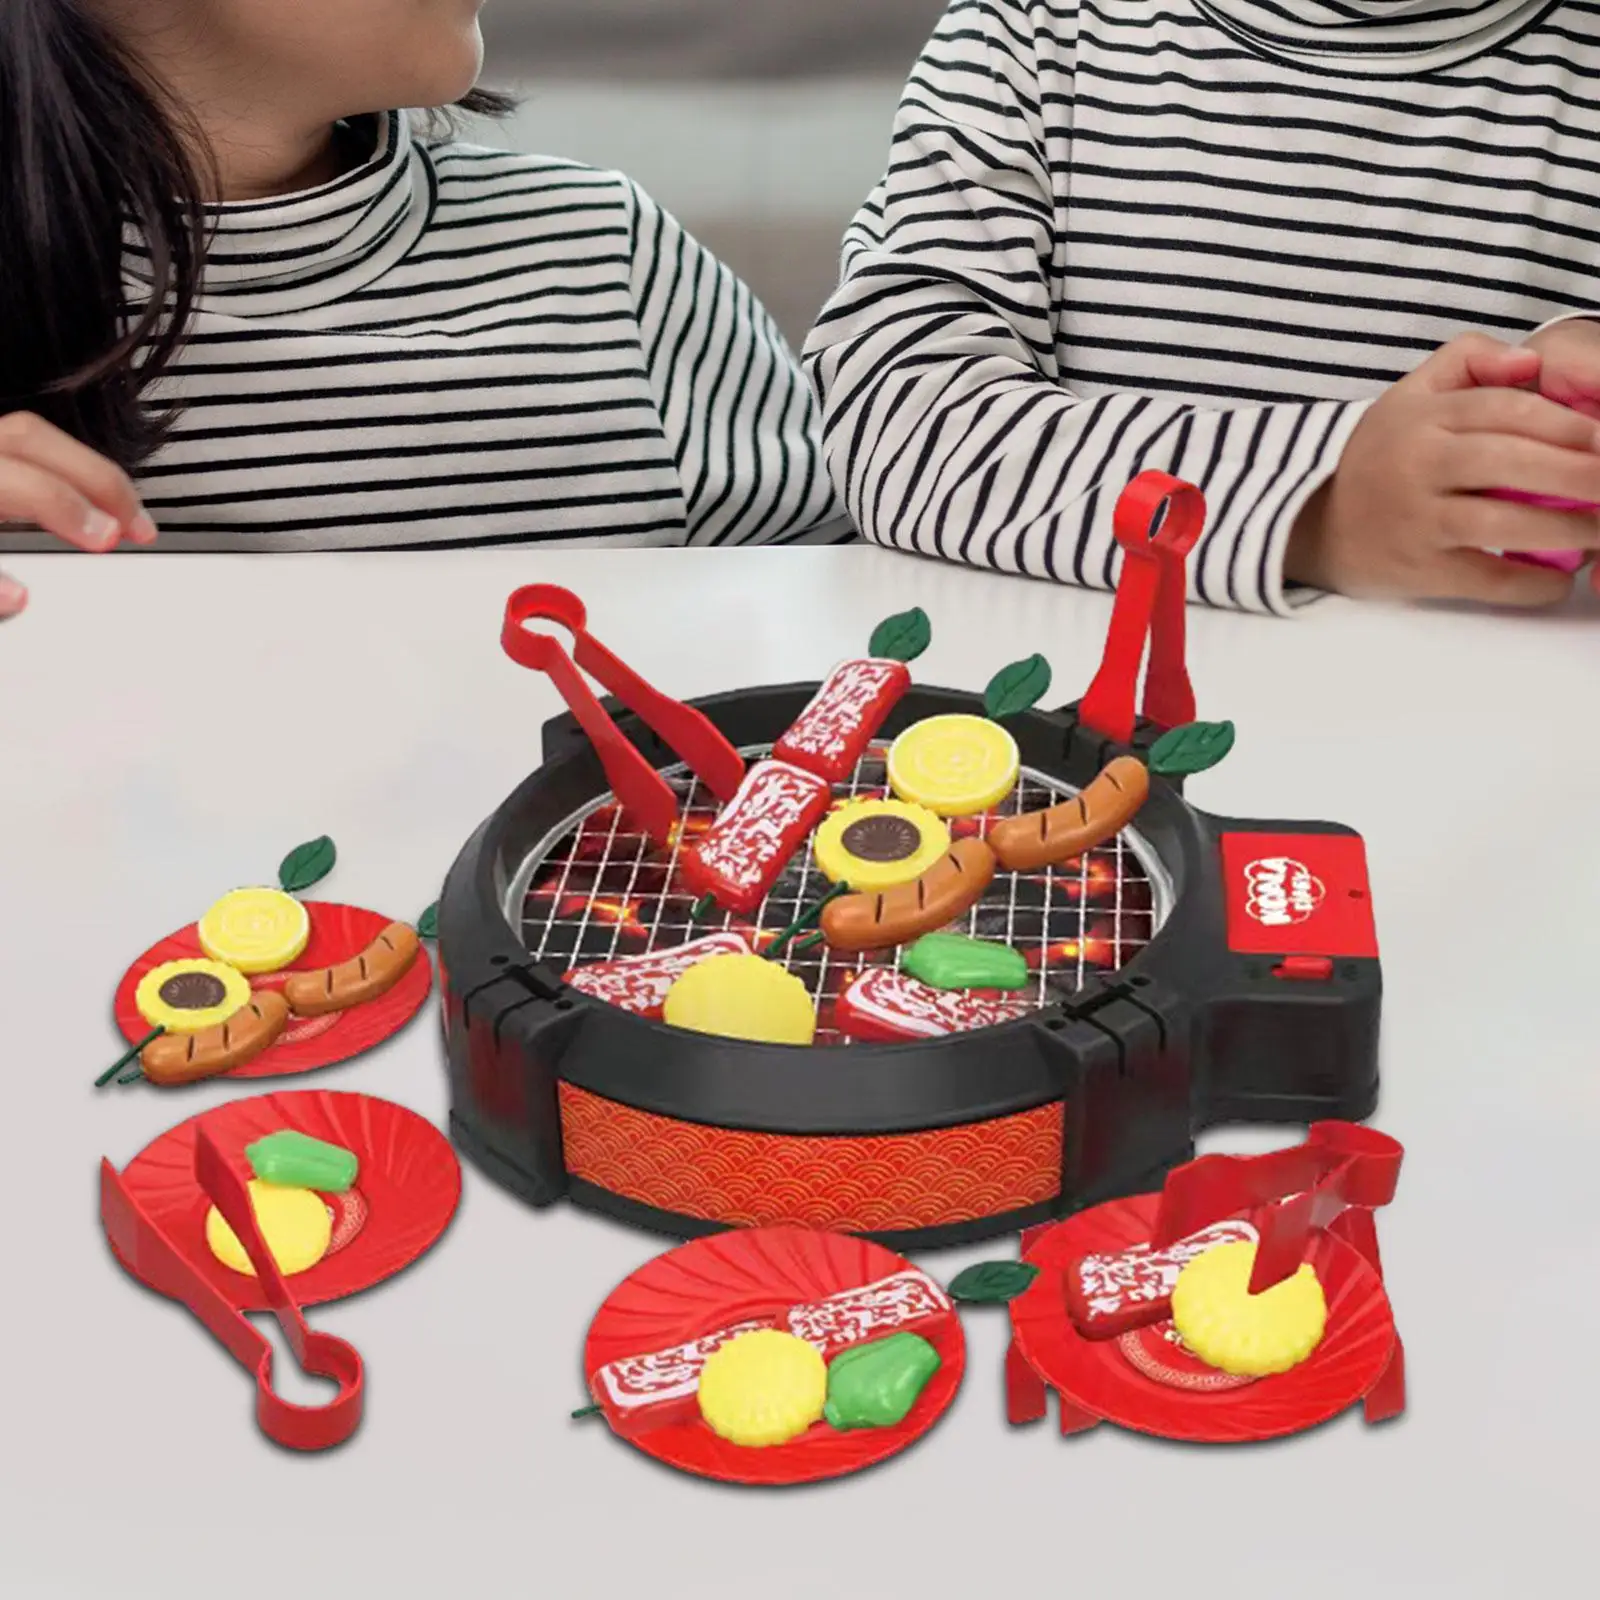 

47x Игровой набор для барбекю и гриля, имитационная игрушка для приготовления пищи, комплект аксессуаров для гриля, детский подарок для девочек и мальчиков